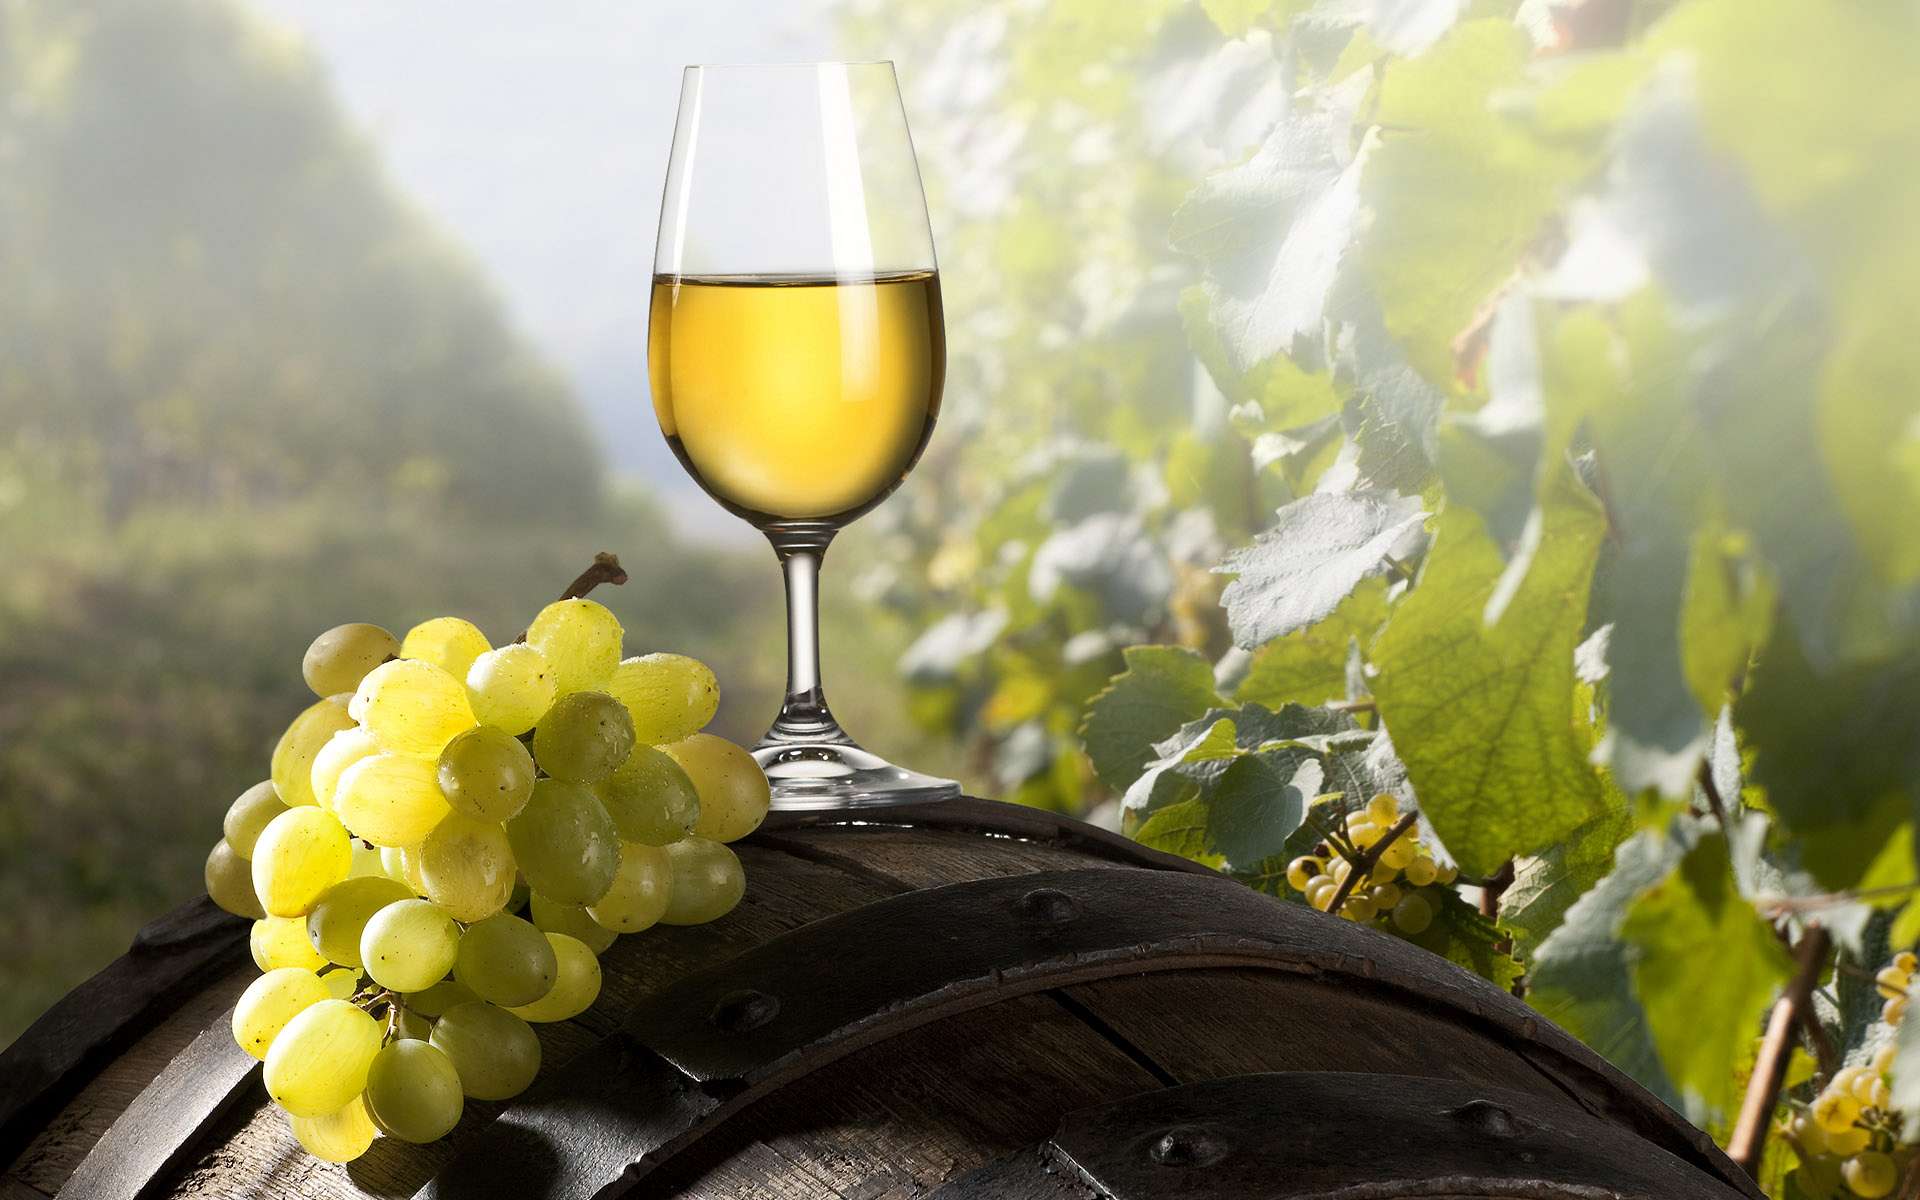 Фотография: солнечные лучи падают на бокал с вином, стоящим на винной бочке, окруженной виноградниками. Рядом лежит гроздь белого винограда